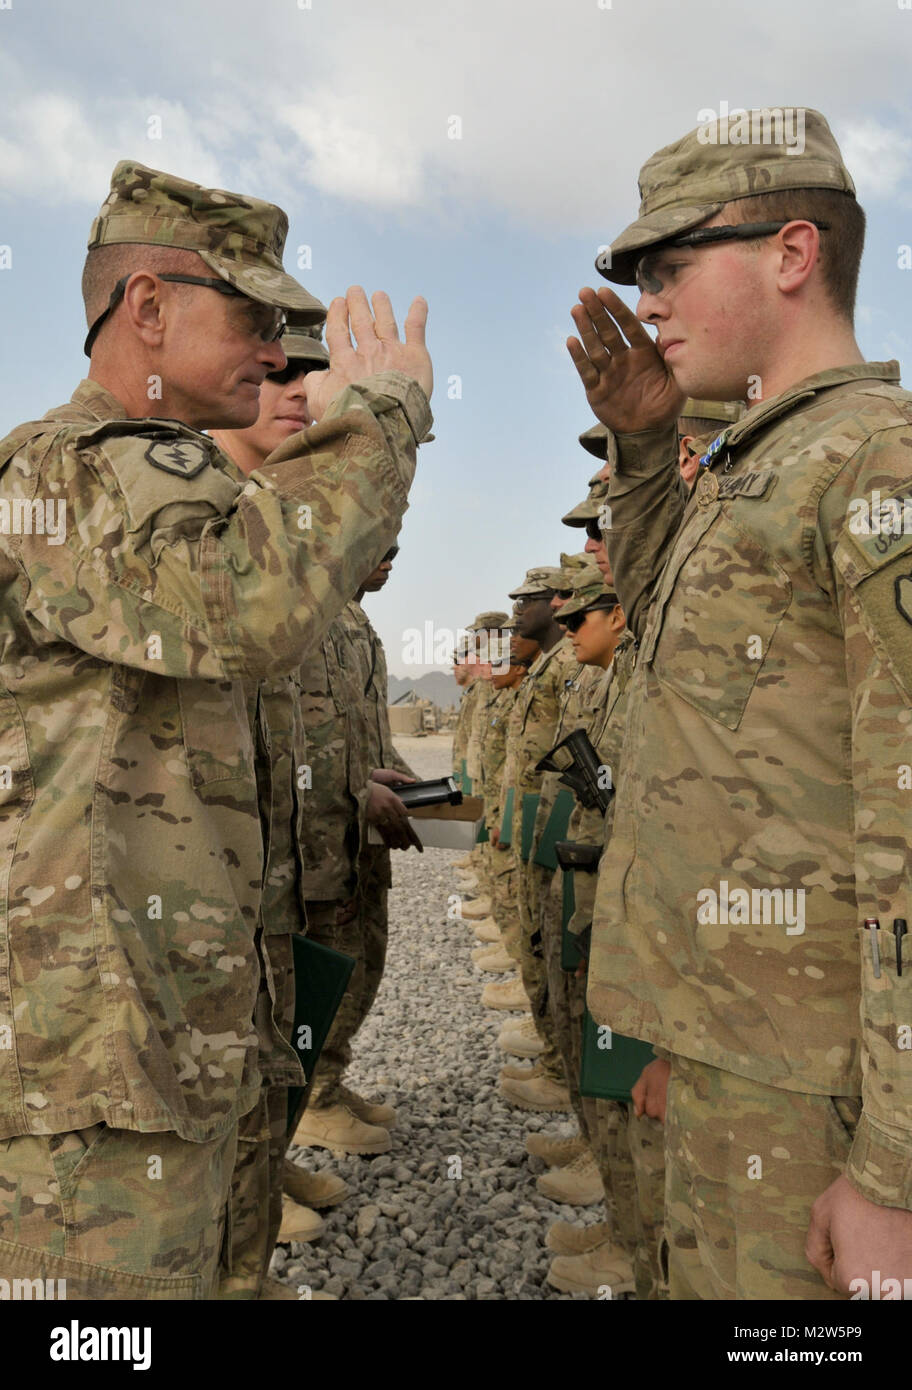 Ejército de EE.UU. PFC. Alex Maxwell, desde Goffstown, N.H., asignados a la Sede y la Sede Compañía, 1er Batallón, 5º Regimiento de Infantería, 1ª Brigada Stryker Combat Team, 25ª División de Infantería, comandante de la brigada saluda el coronel Todd Wood tras adjudicarse la Medalla de Logro del ejército en la base de operaciones de avanzada en Panjwa Shoja'i, distrito de la provincia de Kandahar, Afganistán, 2 de marzo de 2012. 120302-A-GT718-023 por 1 Equipo de Combate de la Brigada Stryker lobos árticos Foto de stock